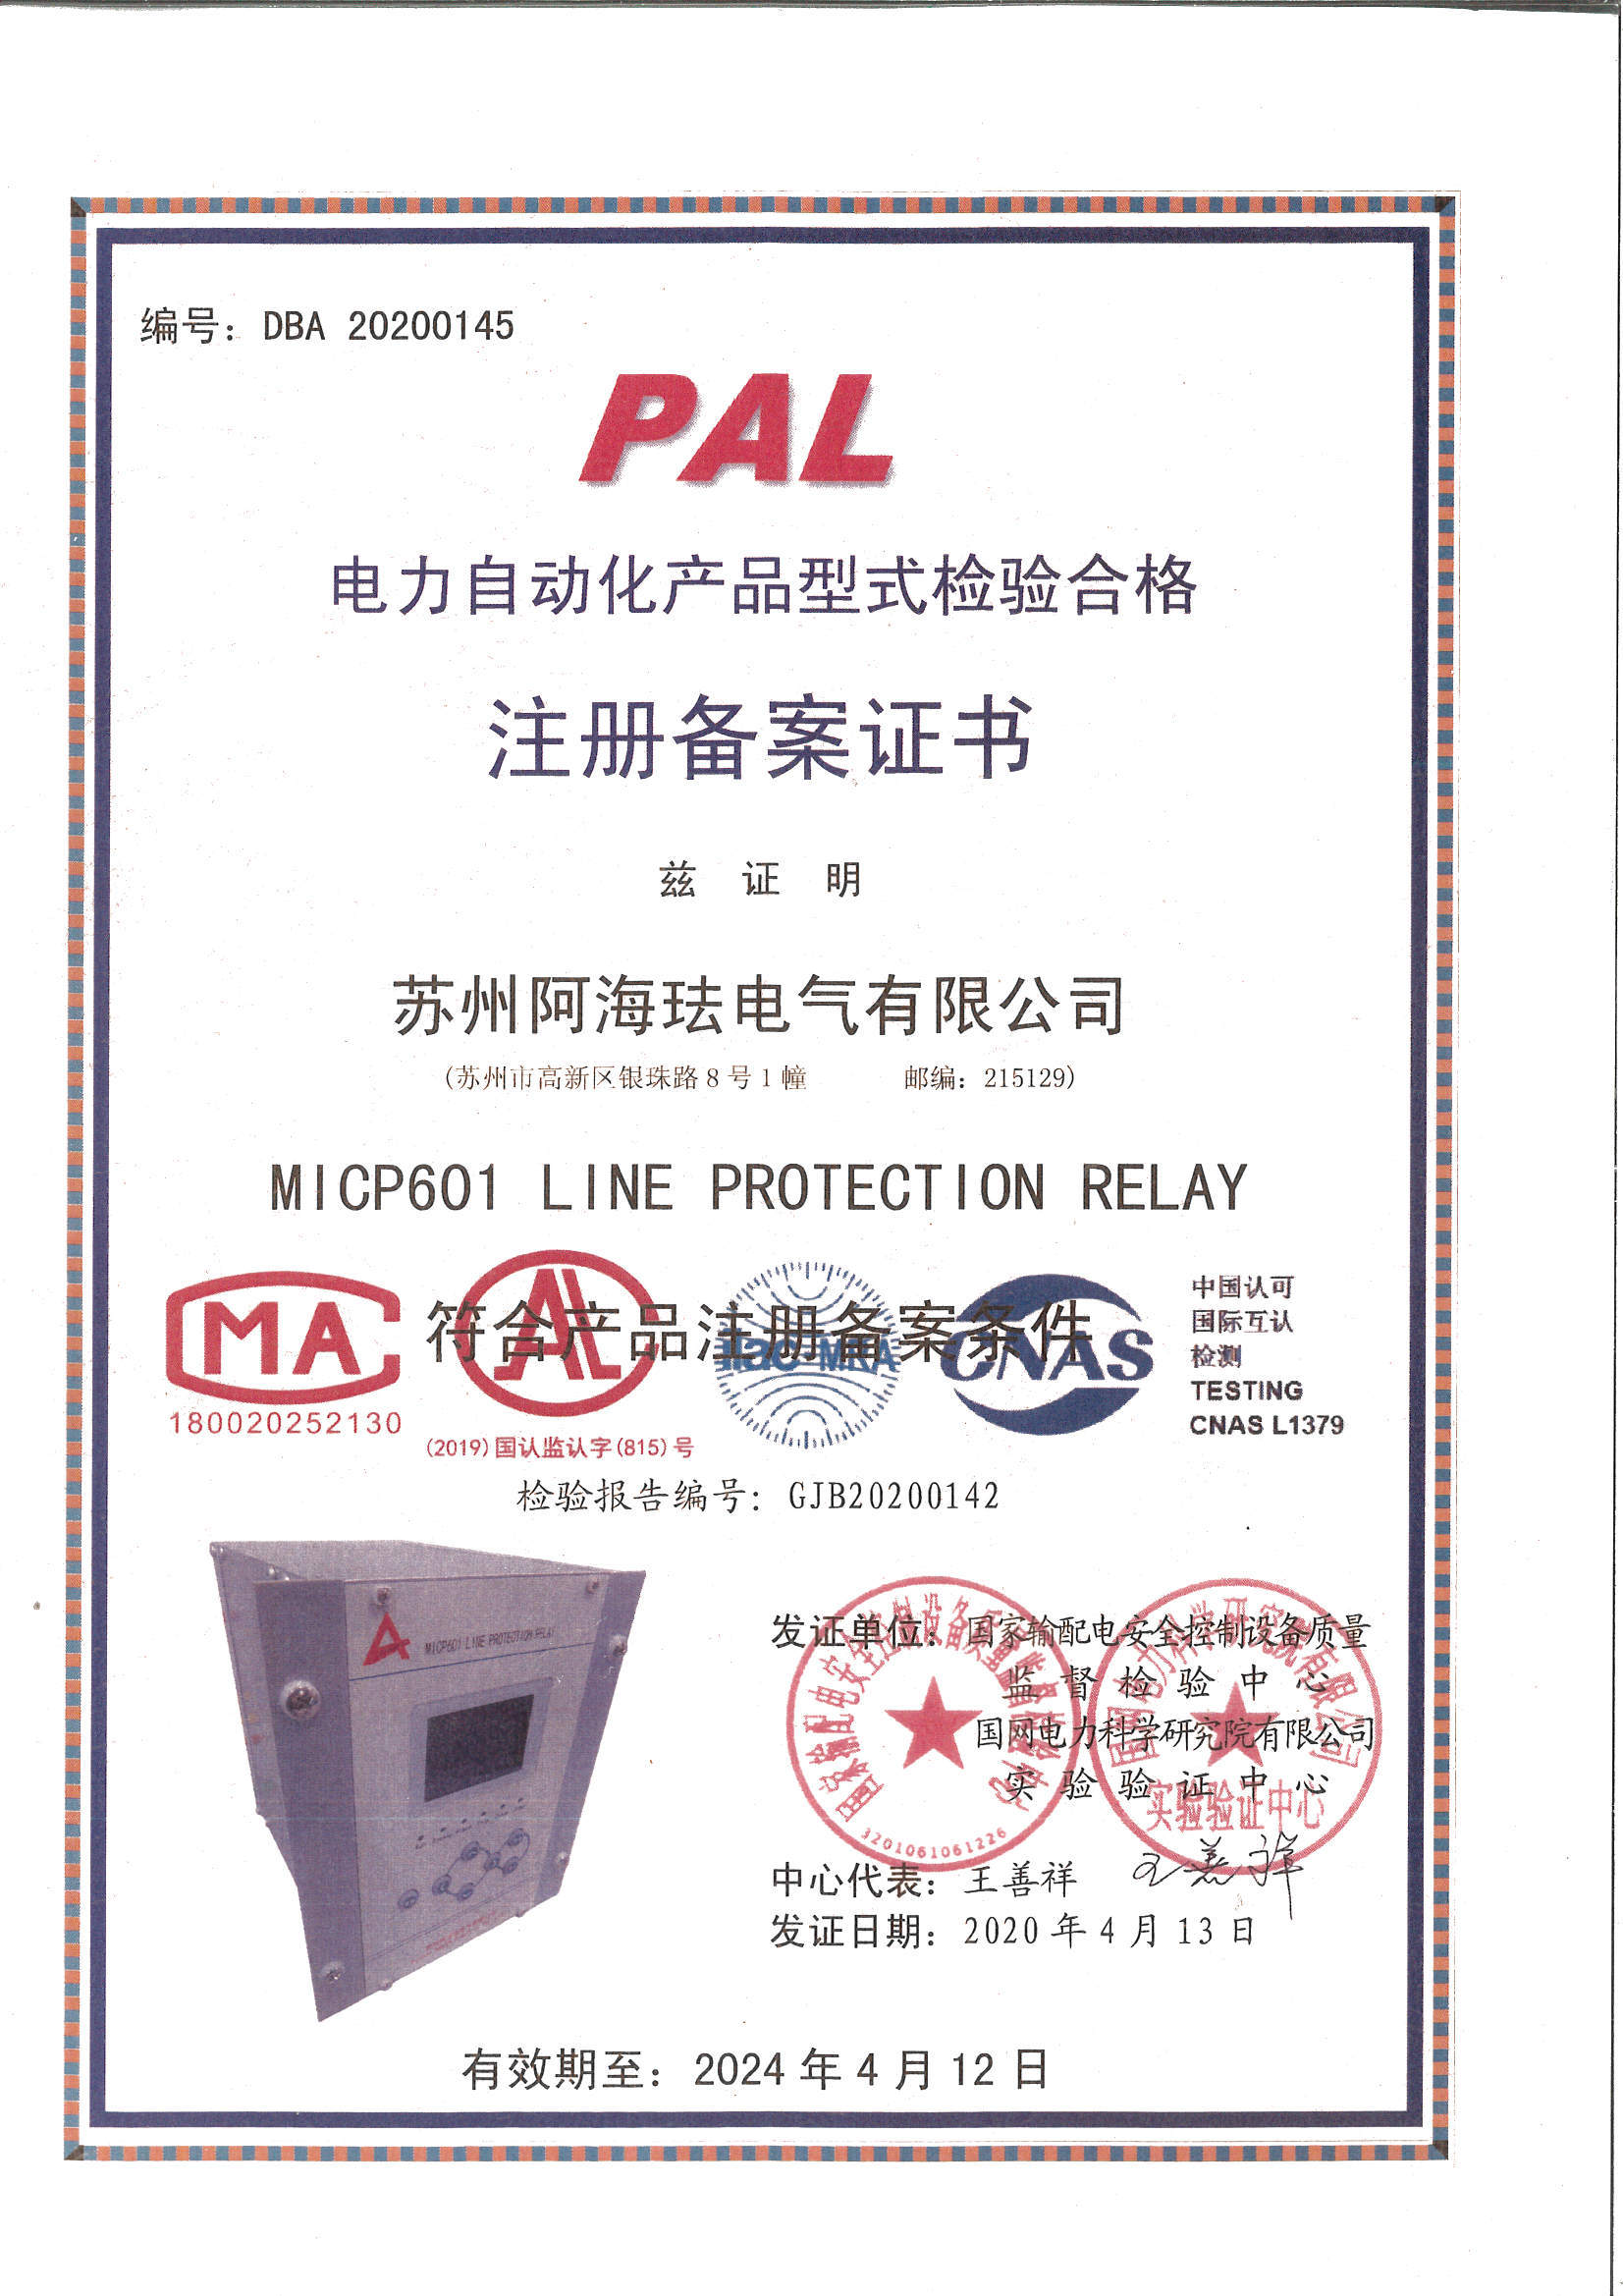 MICP601 Filing Certificate